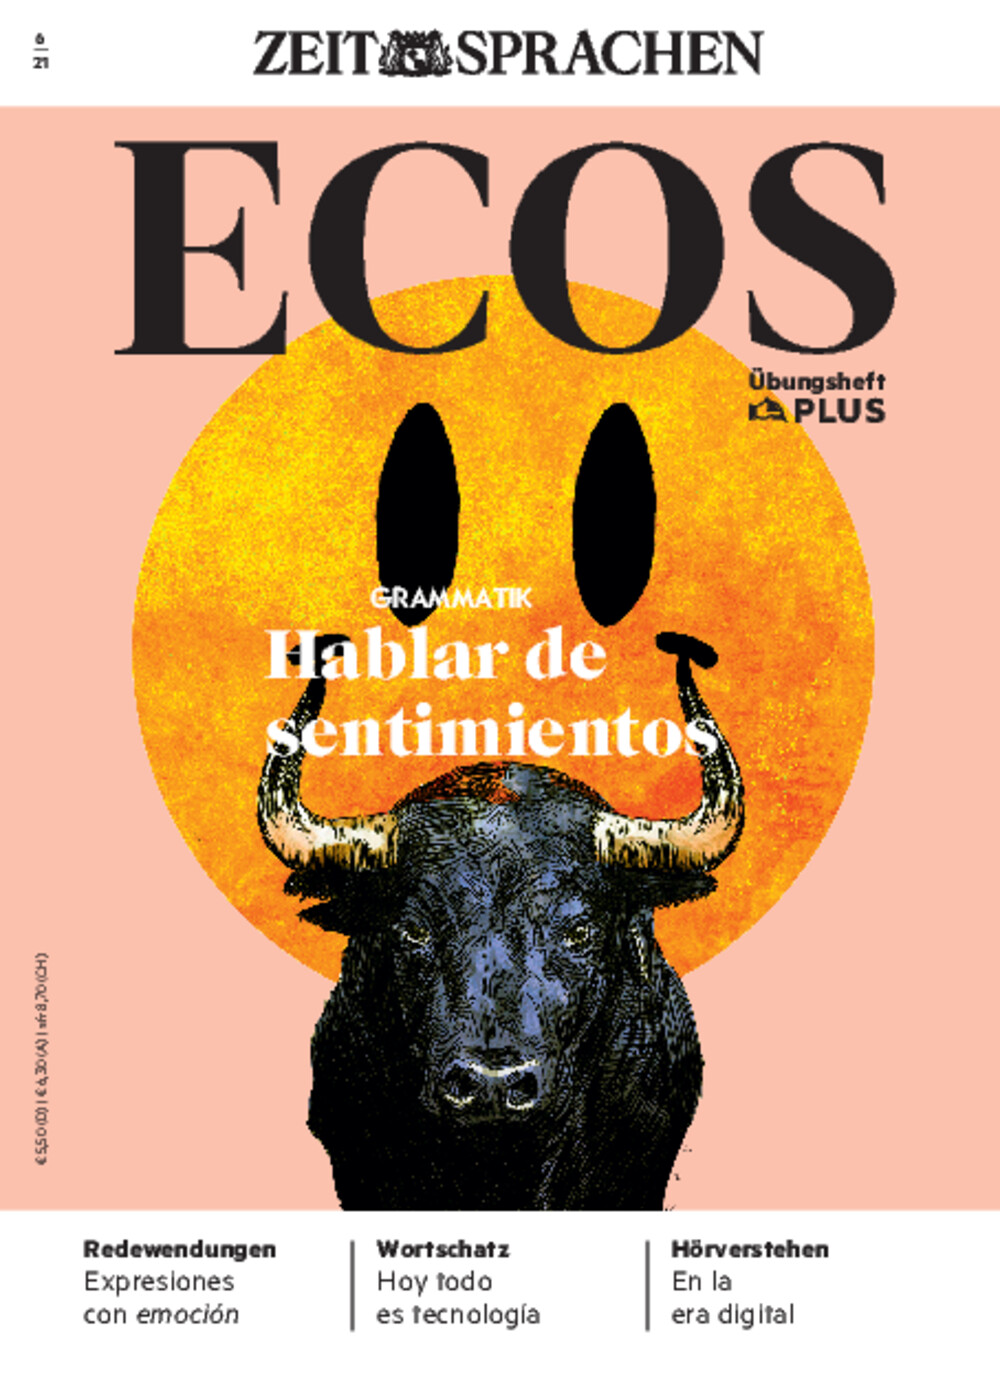 Ecos PLUS ePaper 06/2021